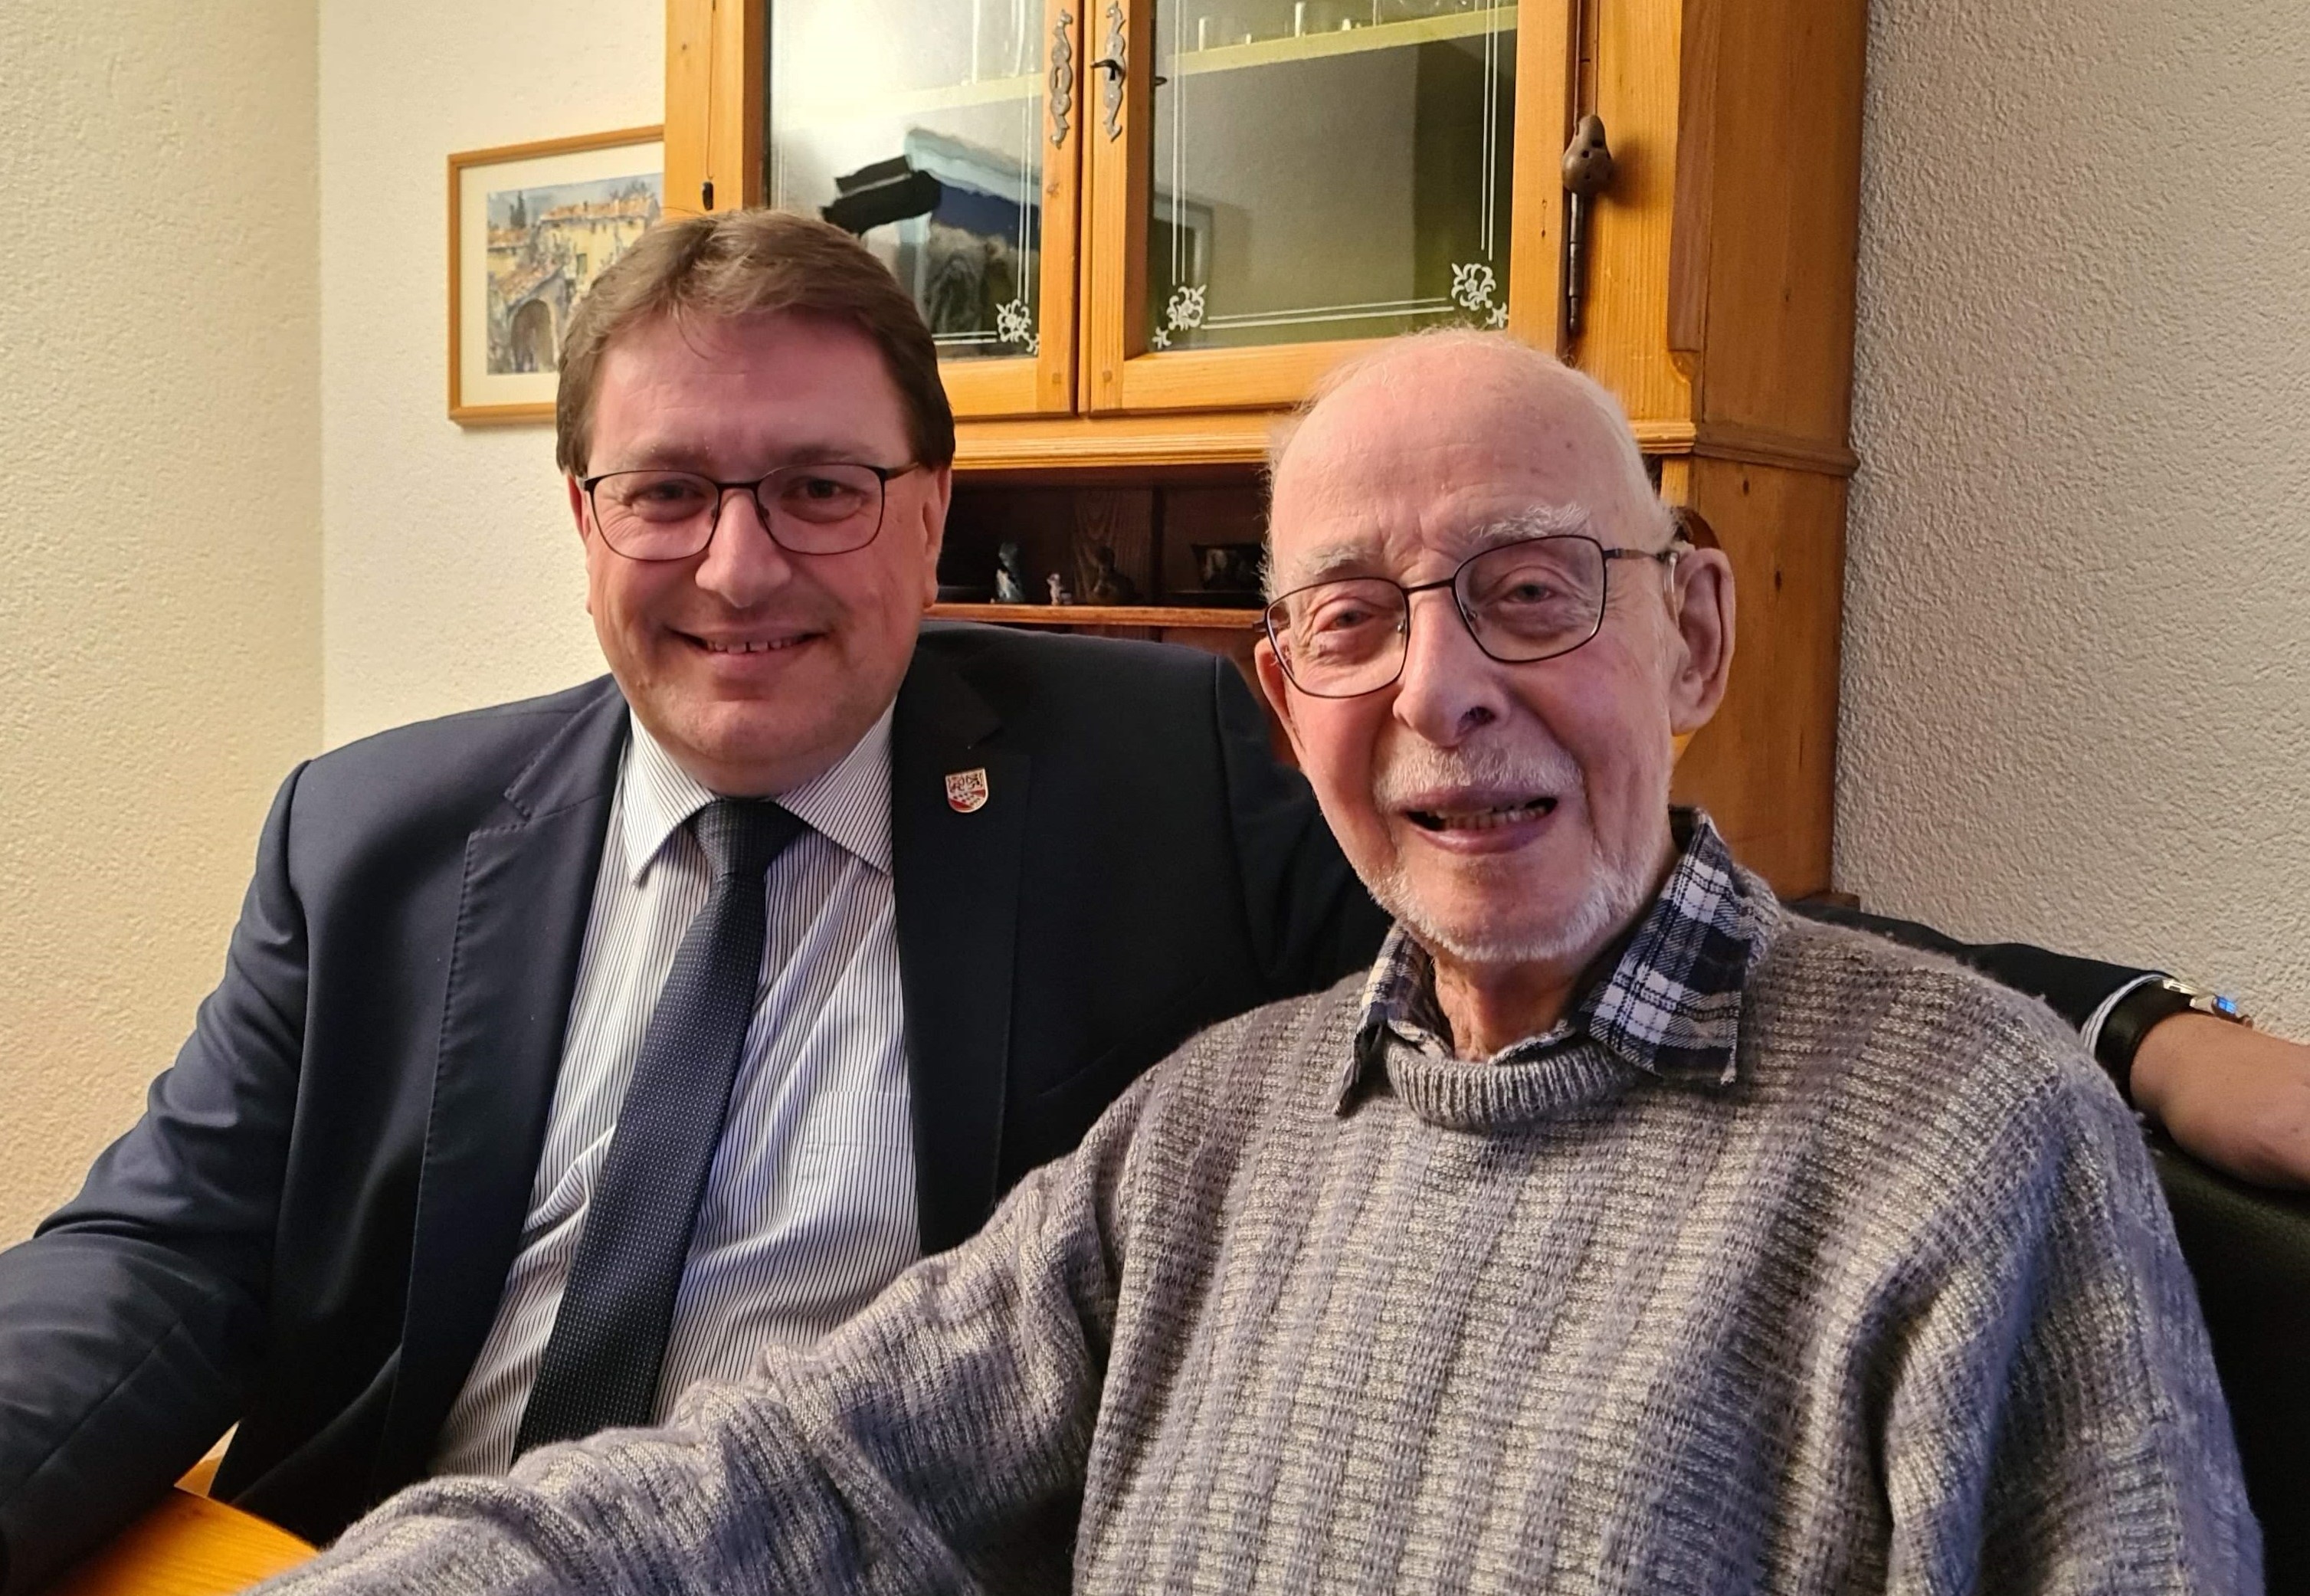 Am 19. Januar durfte Herr Hansruedi Begert seine Glückwünsche vom Gemeinderat entgegen nehmen. Herzliche Gratulation zum 90. Geburtstag!